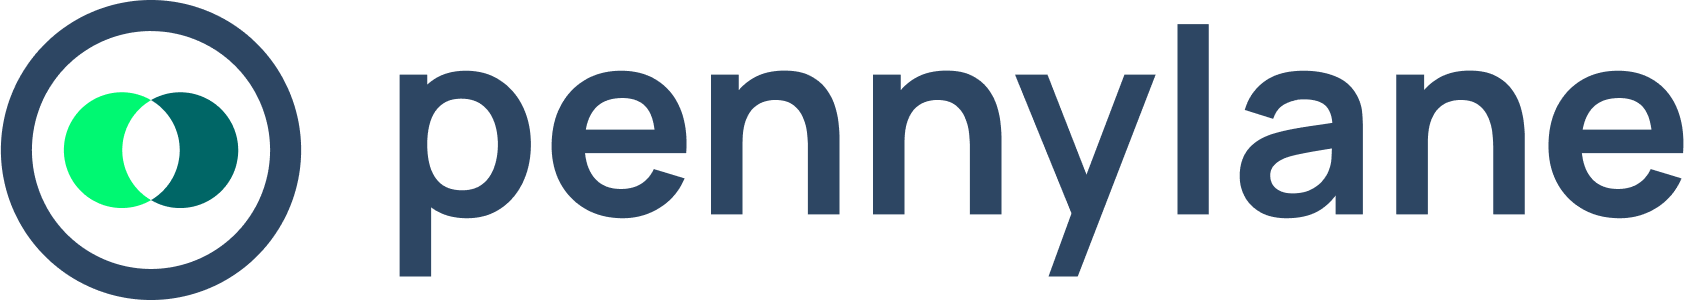 logo-pennylane